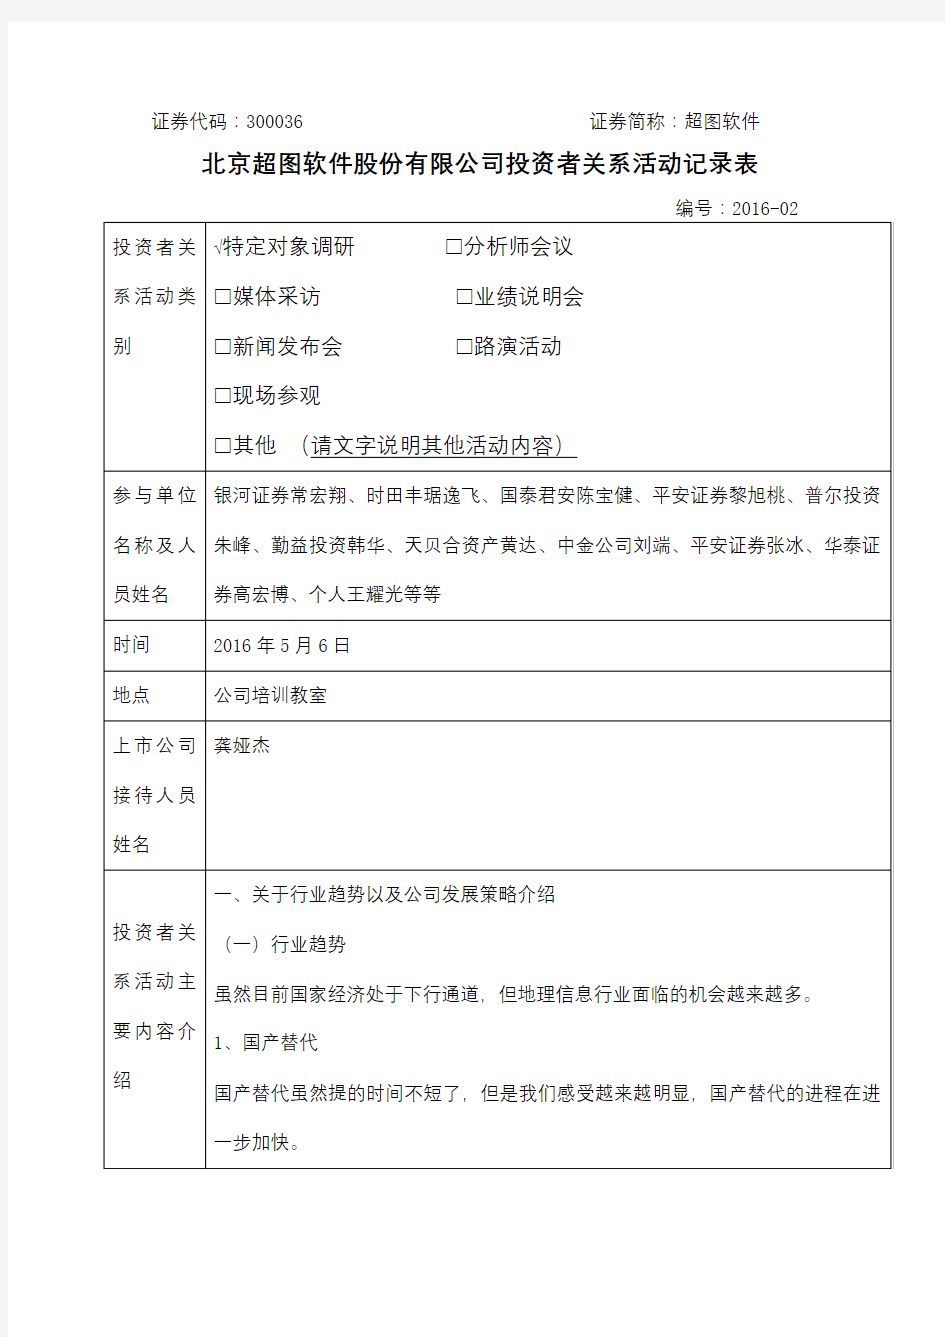 北京超图软件股份有限公司投资者关系活动记录表【模板】